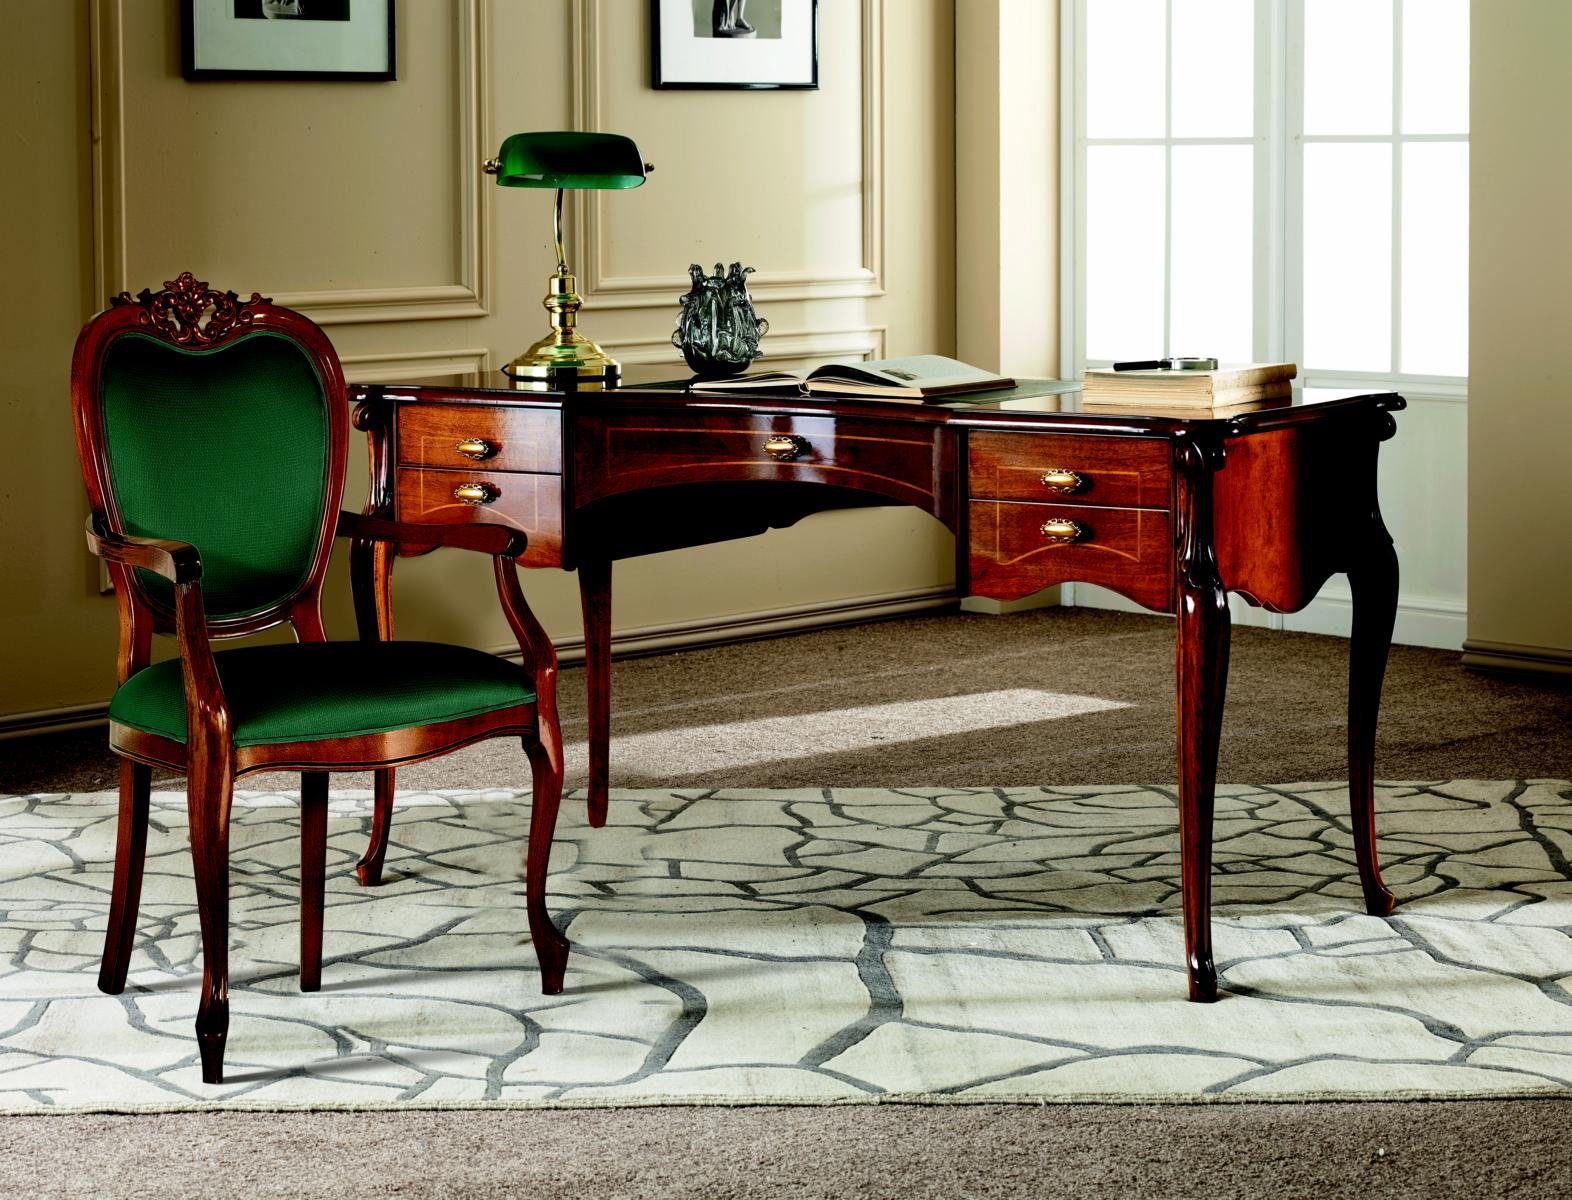 JVmoebel Schreibtisch Italienische Klassisches Barock Büromöbel Möbel Luxus Schreibtisch Stil Holz